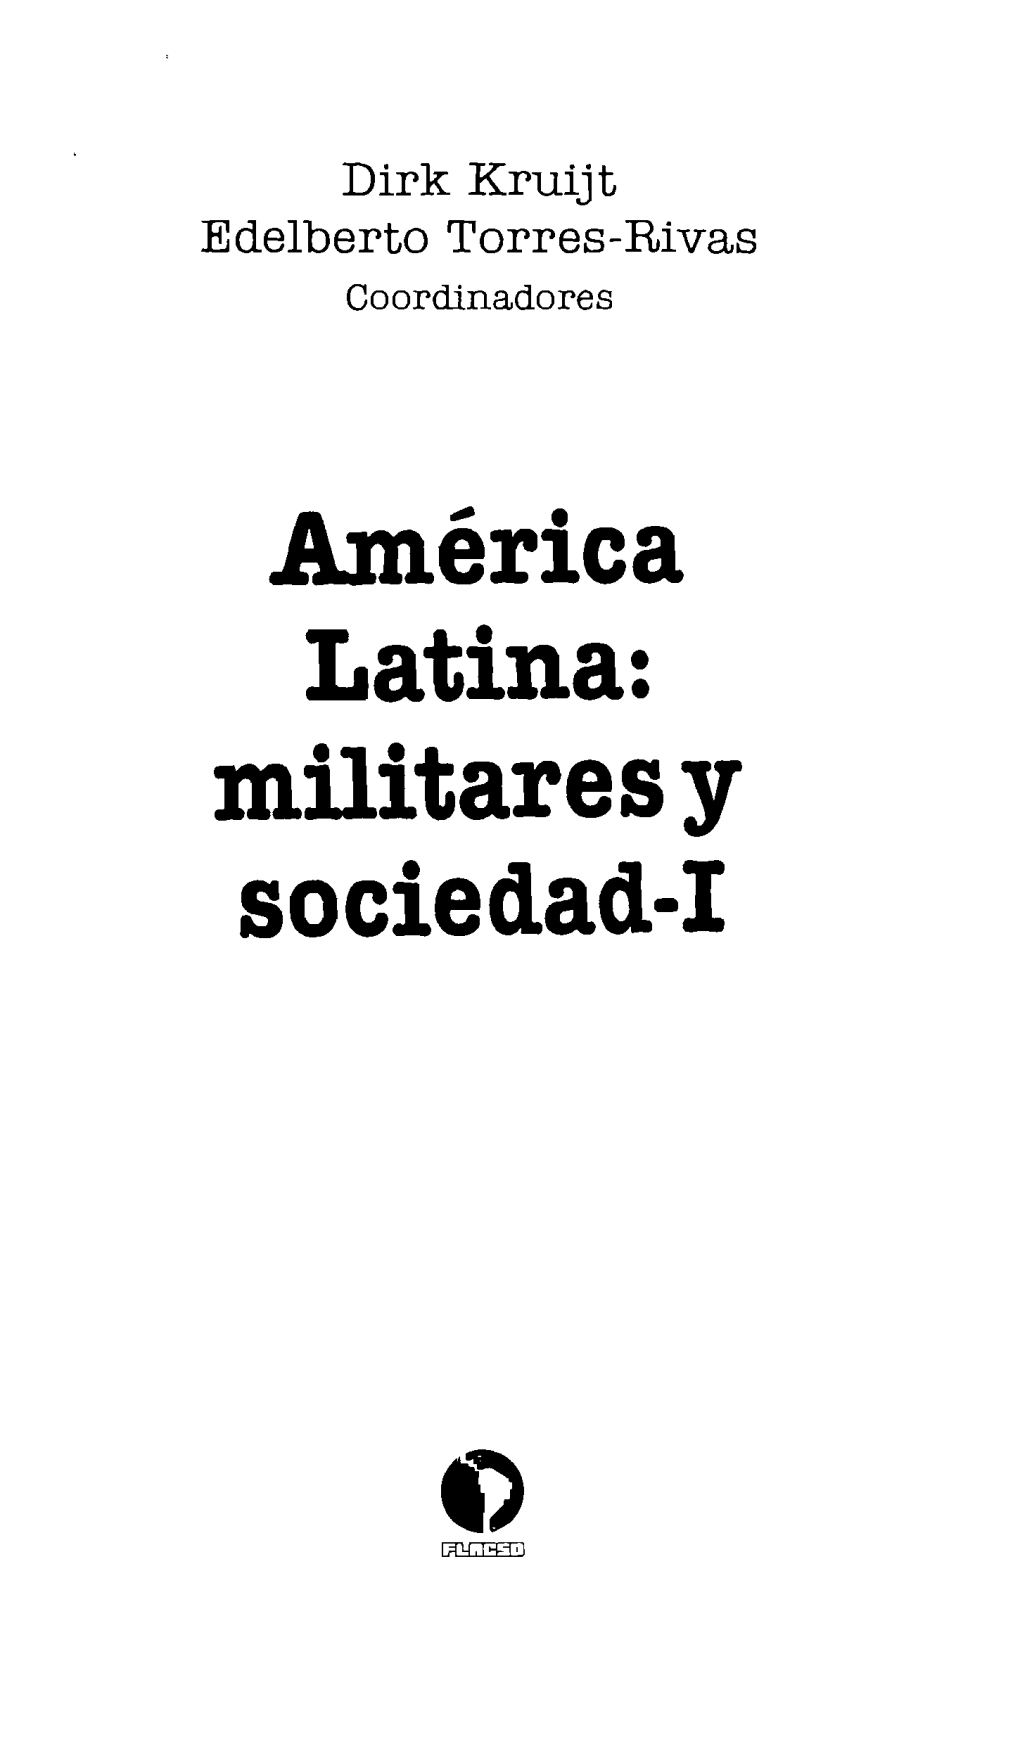 Militaresy Sociedad-I 355.03 A49a América Latina: Militares Y Sociedad / Coord